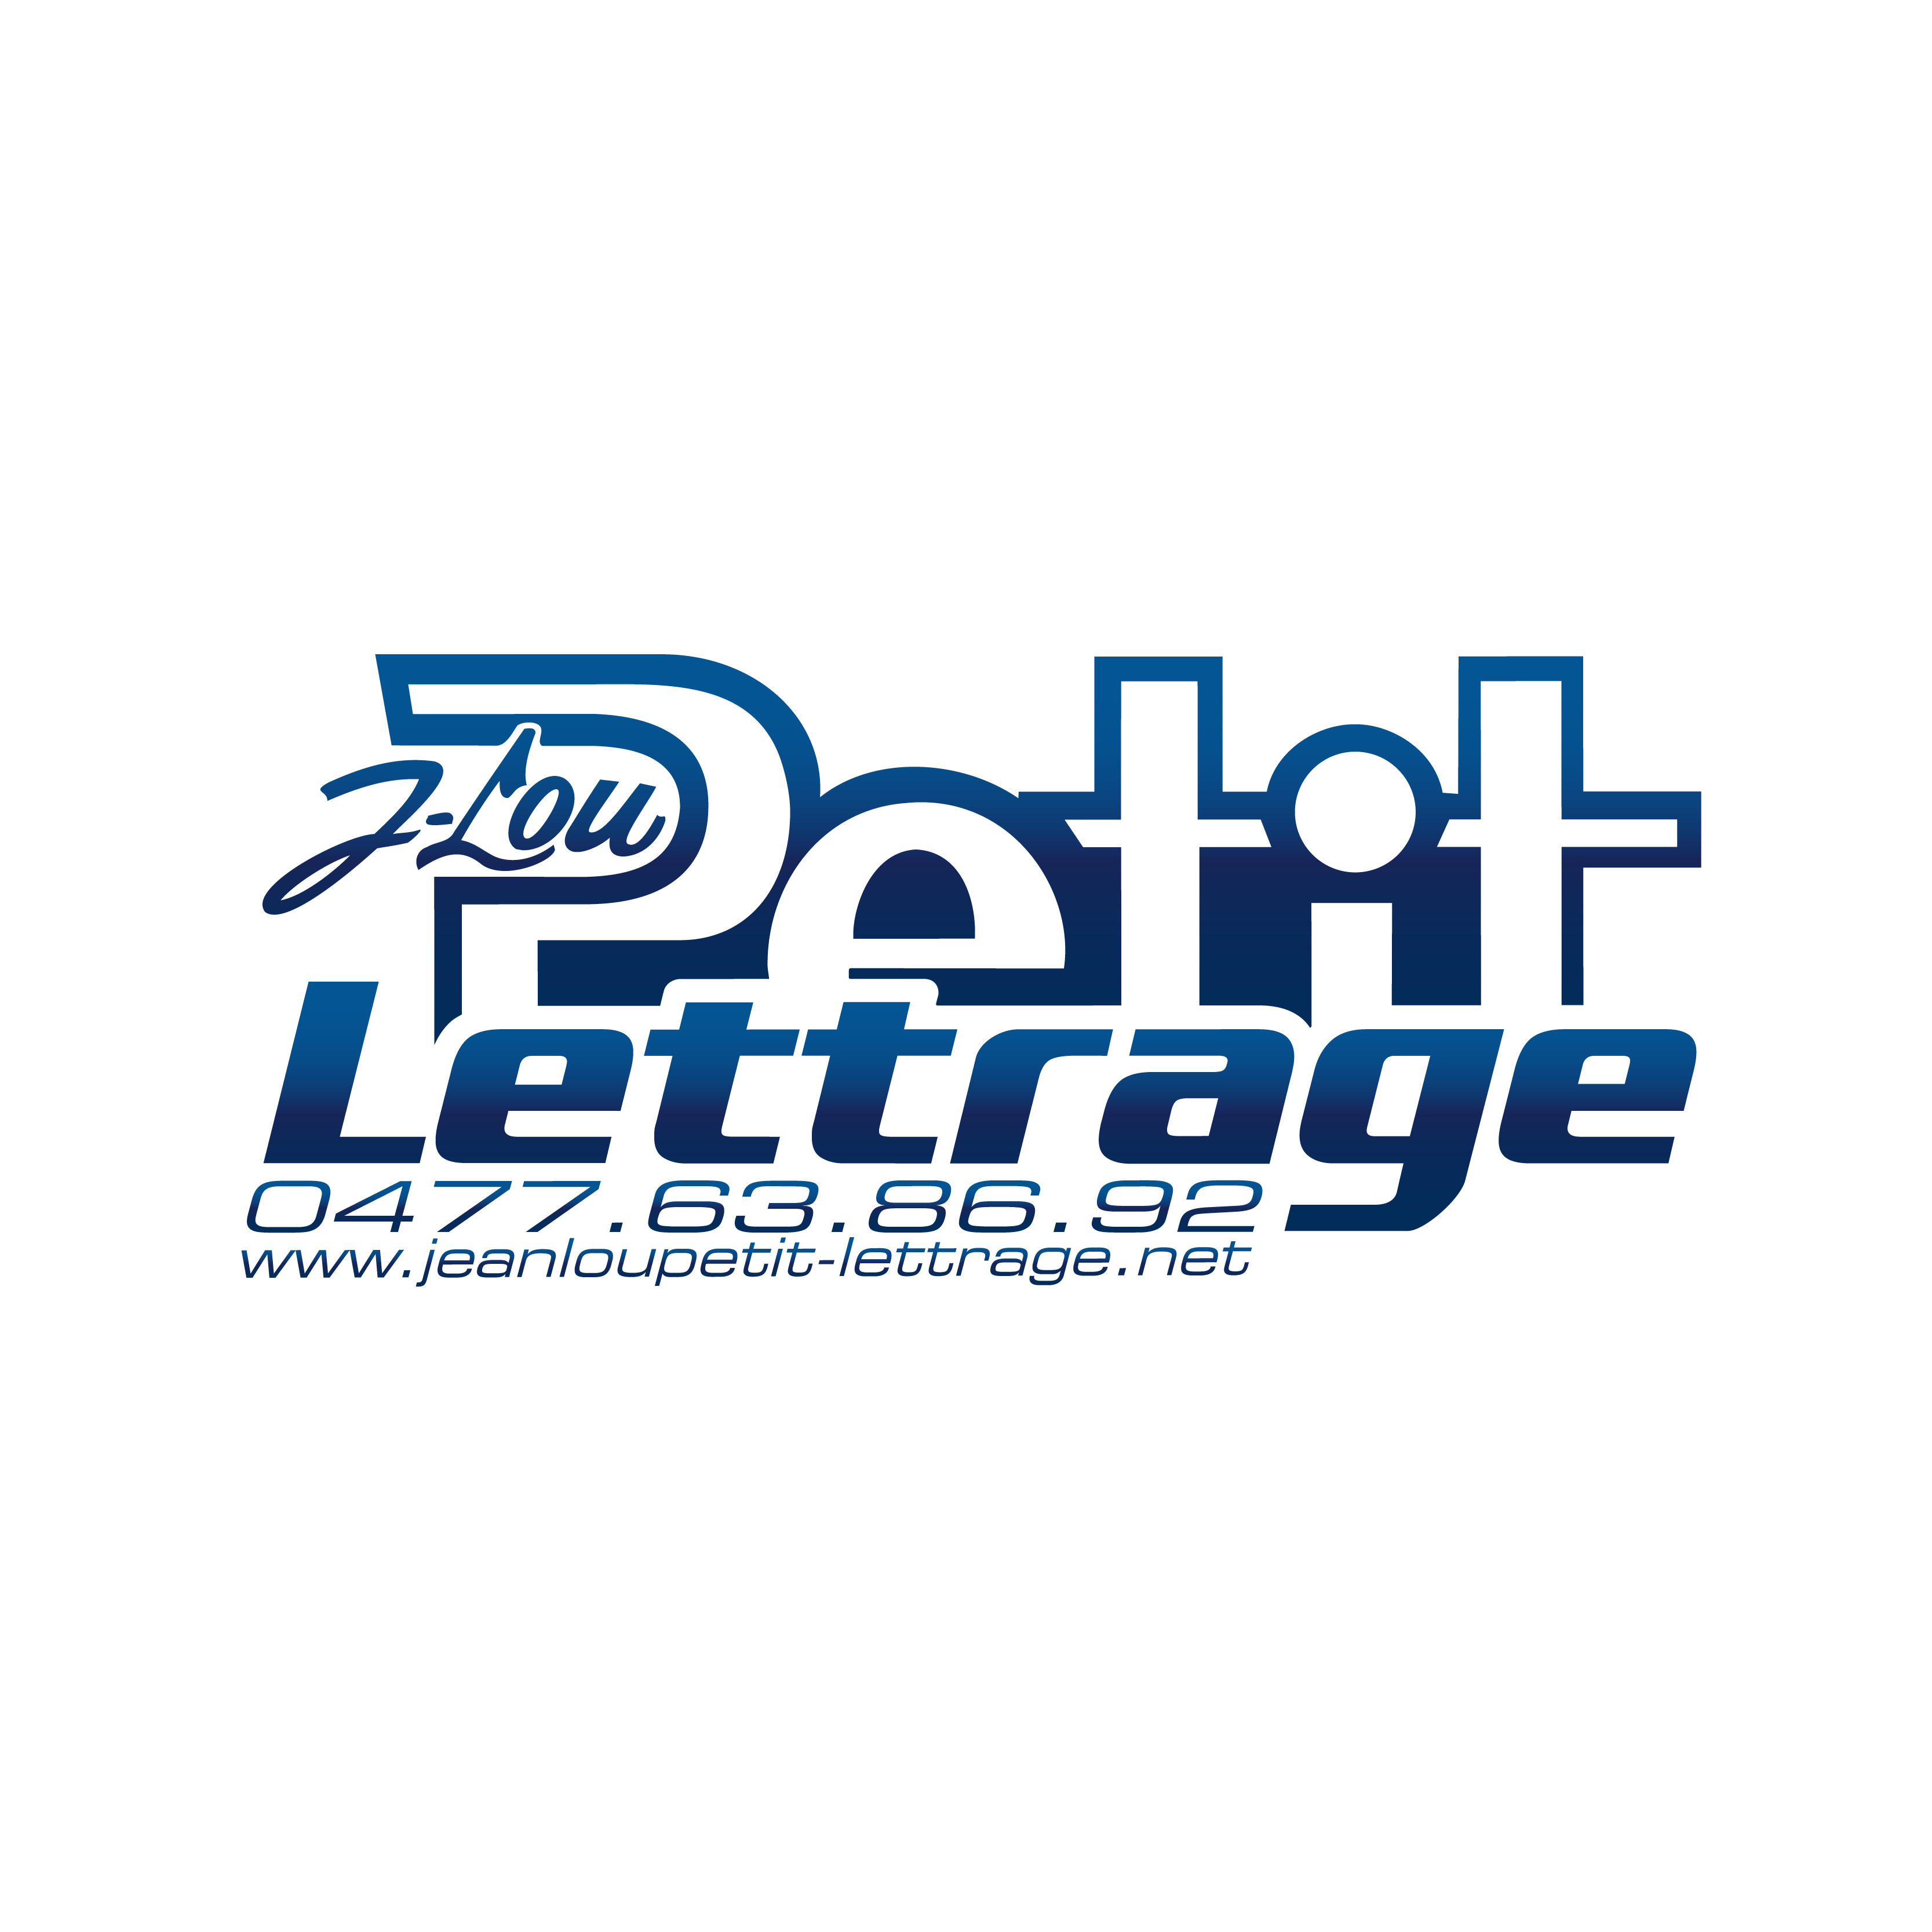 logo_Jean-lou Petit lettrage